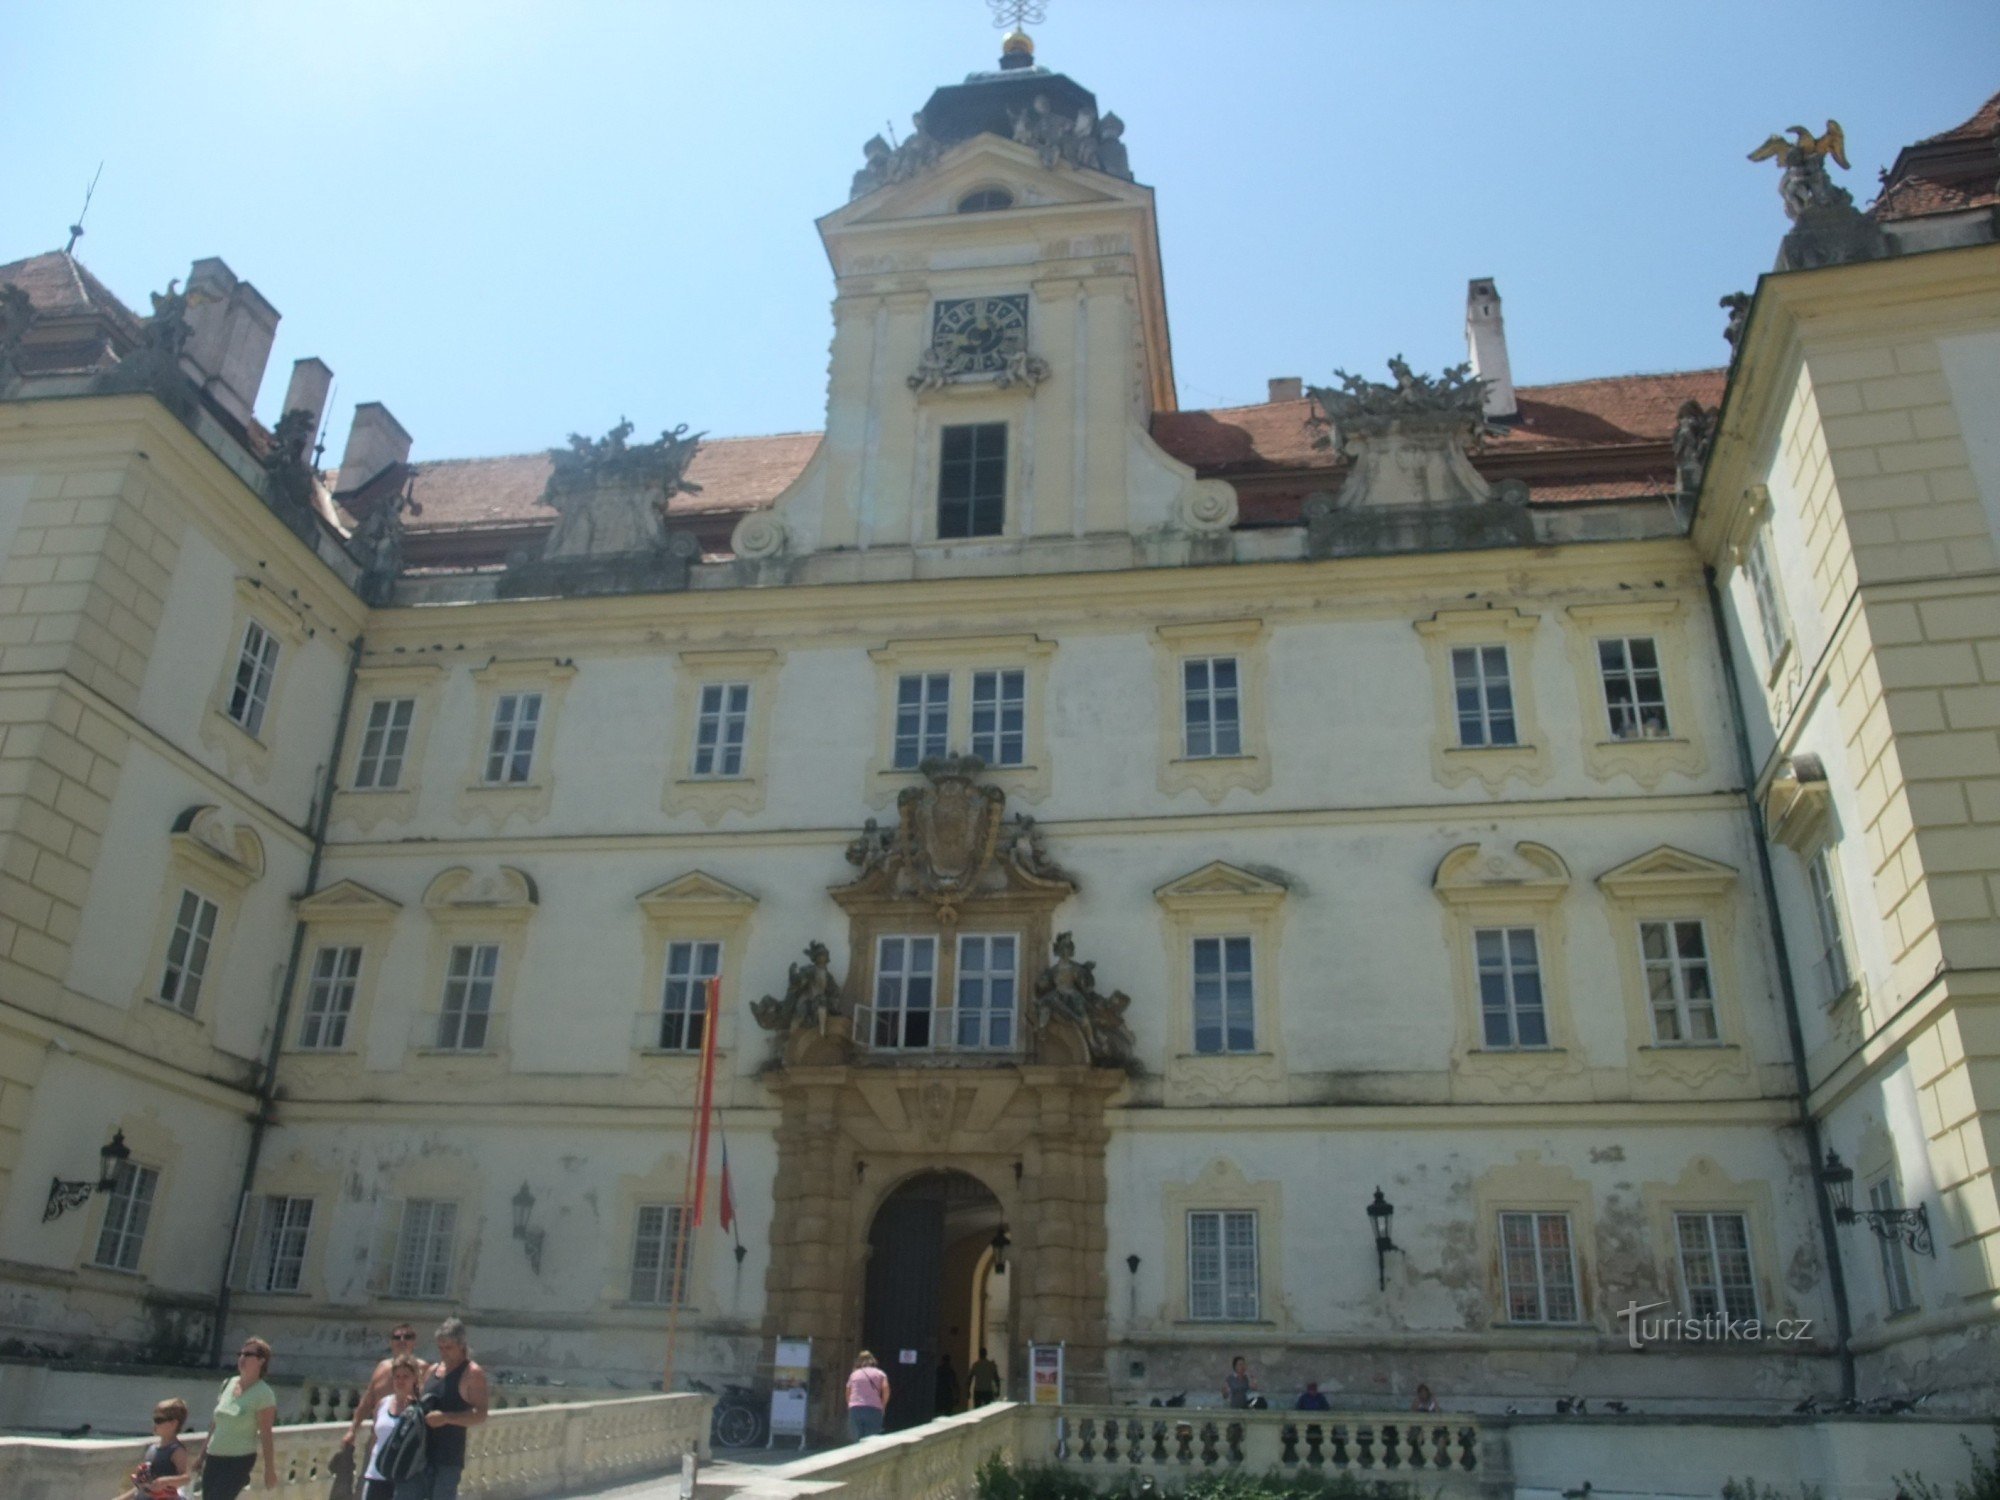 Valtice kastély - a liechtensteiniek egykori impozáns rezidenciája